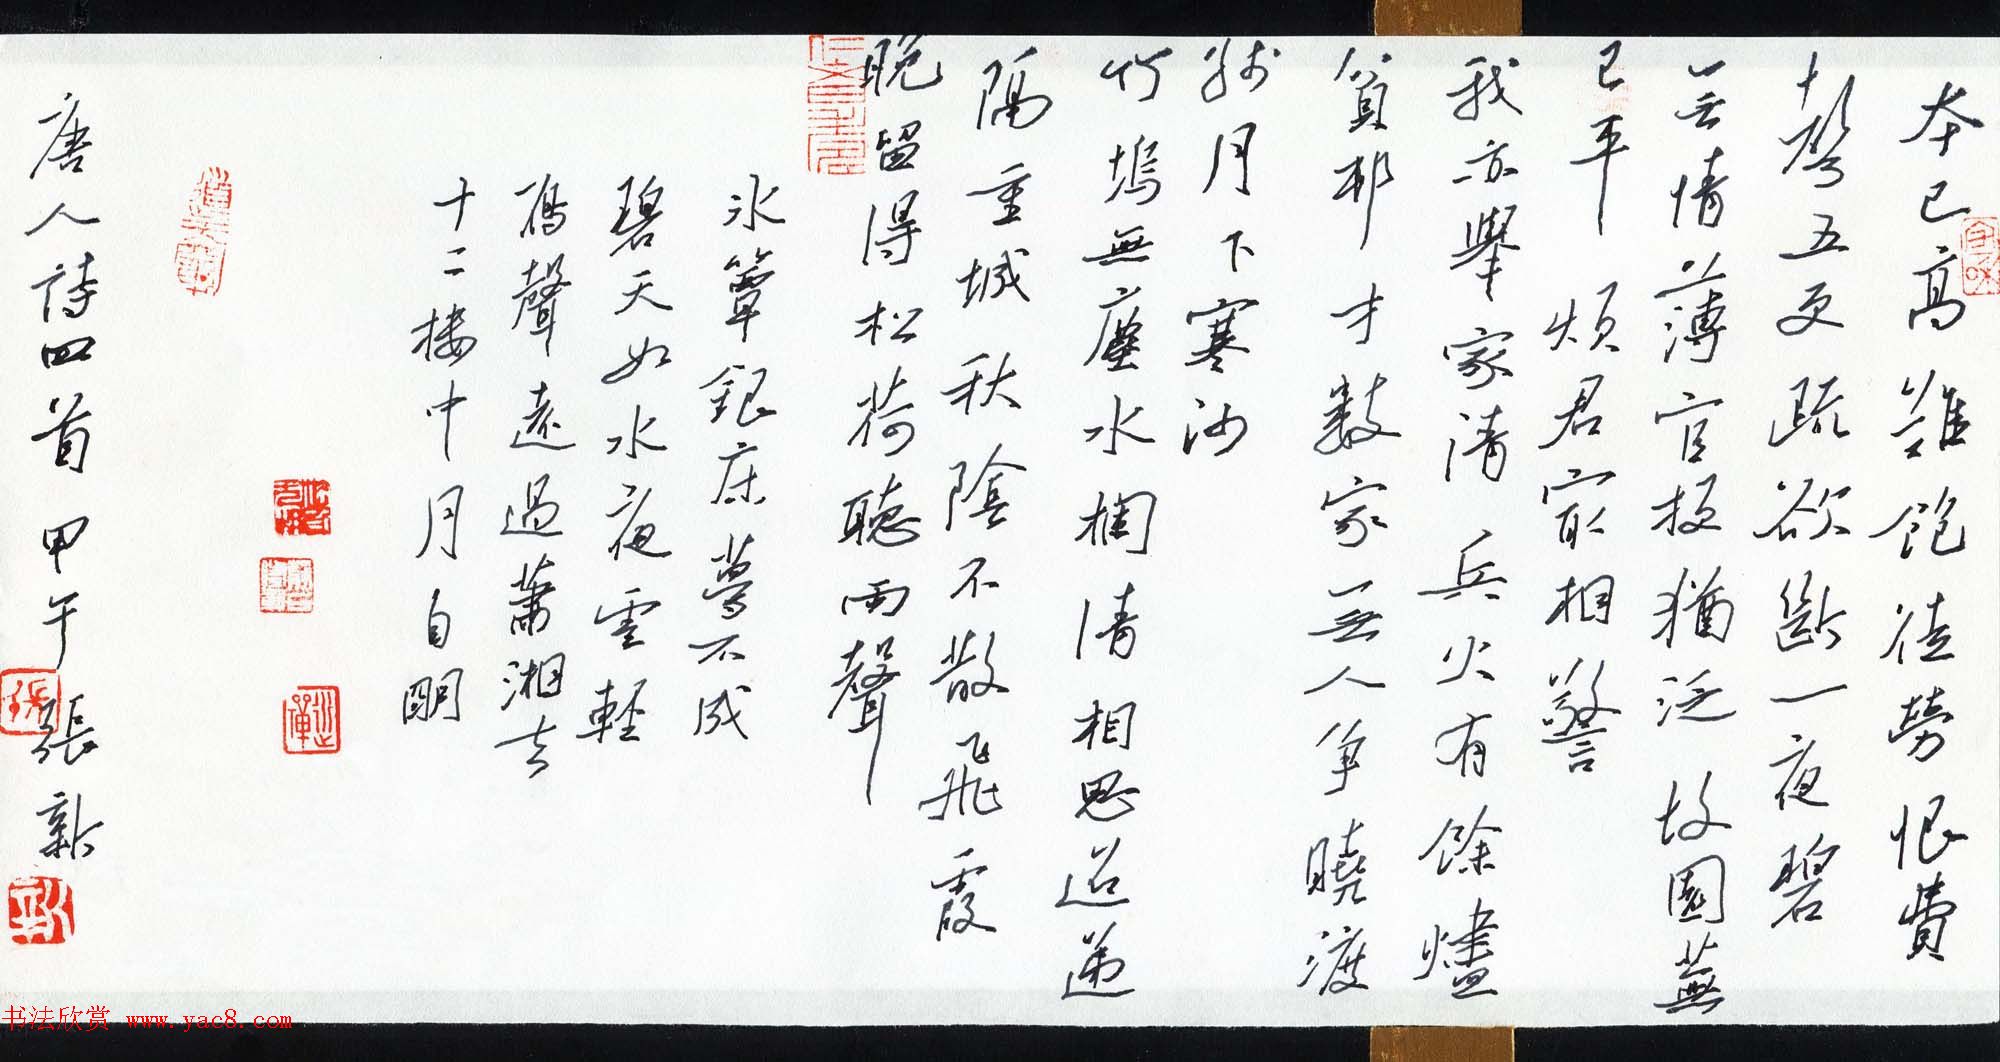 品翰堂杯第一届中国硬笔书法公开赛获奖作品欣赏